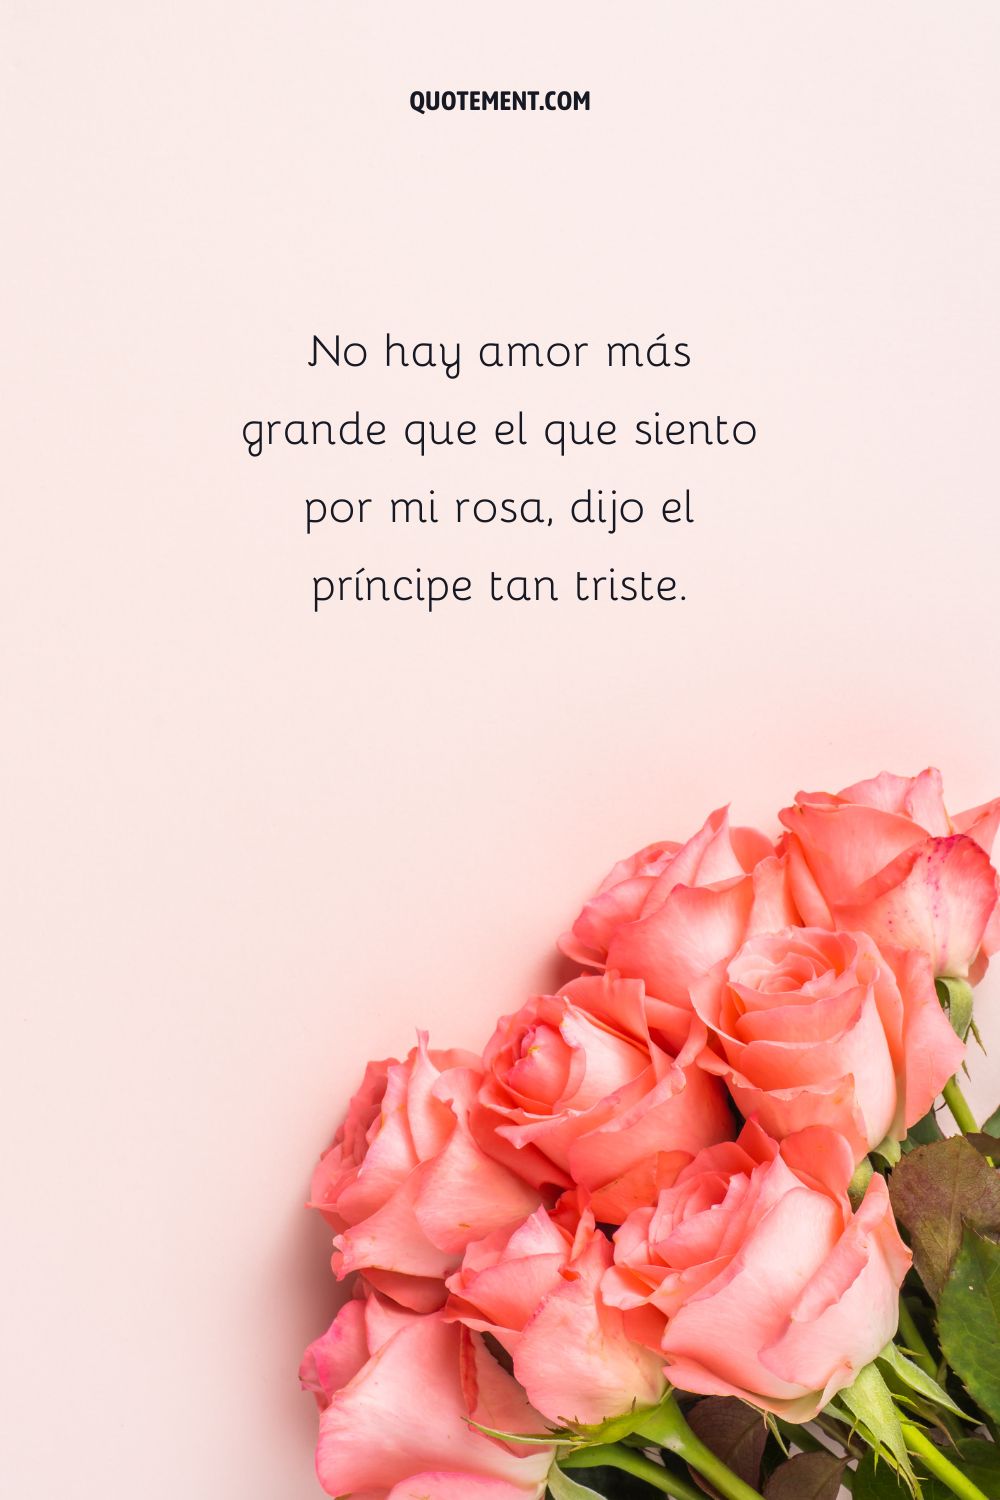 No hay amor más grande que el que siento por mi rosa, dijo el príncipe tan triste.